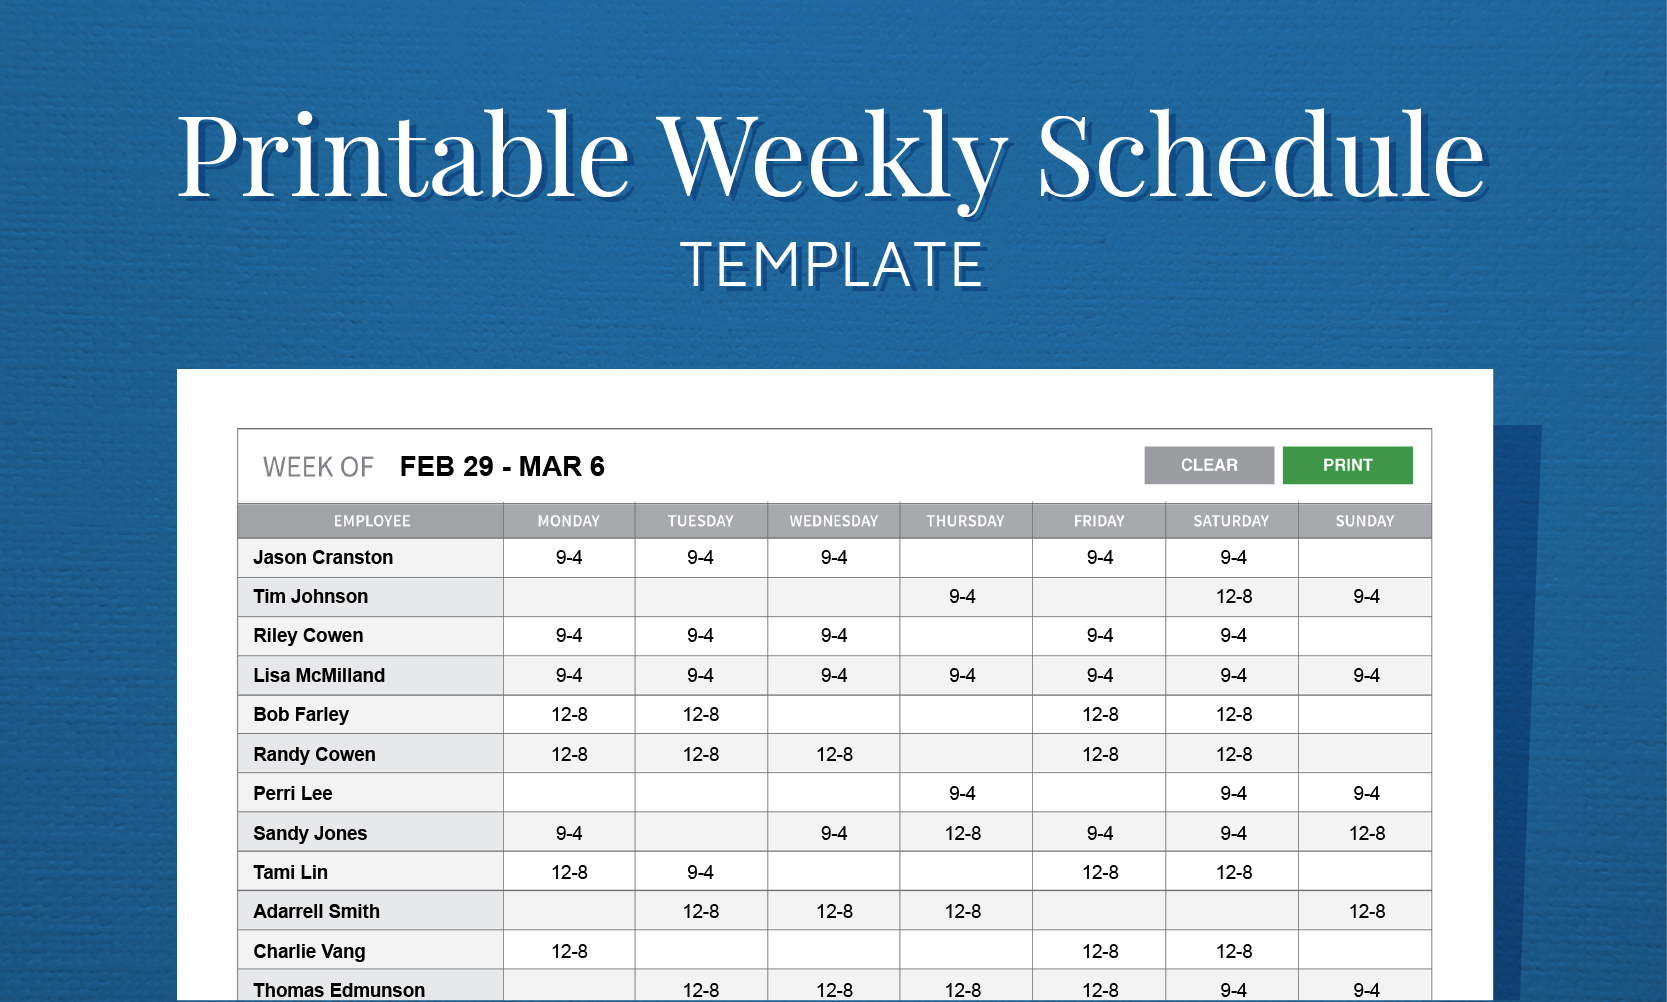 Free Printable Weekly Work Schedule Template For Employee Scheduling - Free Printable Work Schedule Maker